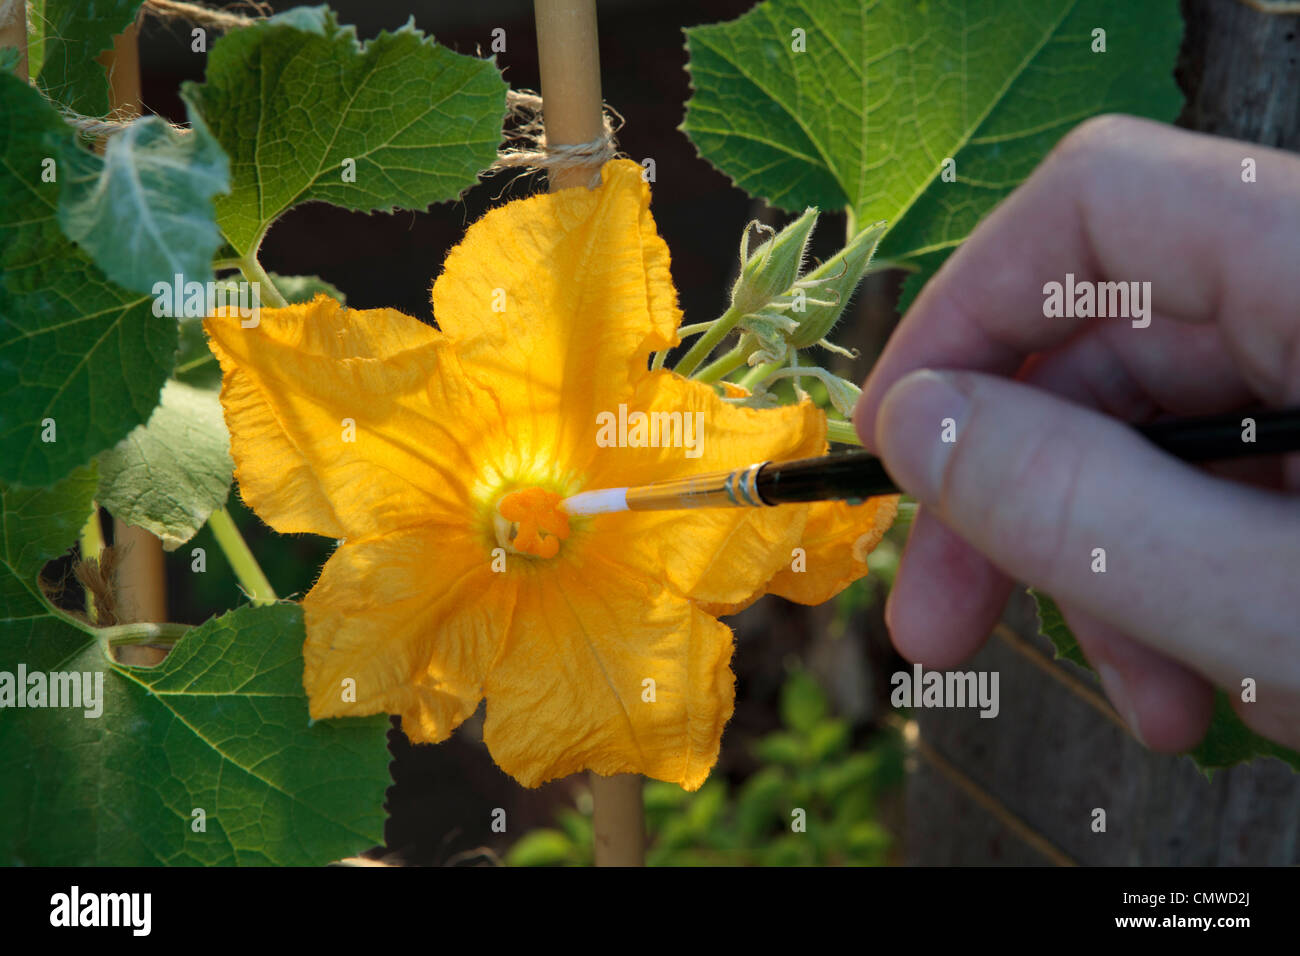 Impollinare a mano una femmina di fiori di zucca con il polline del fiore maschio utilizzando un pennello. Foto Stock